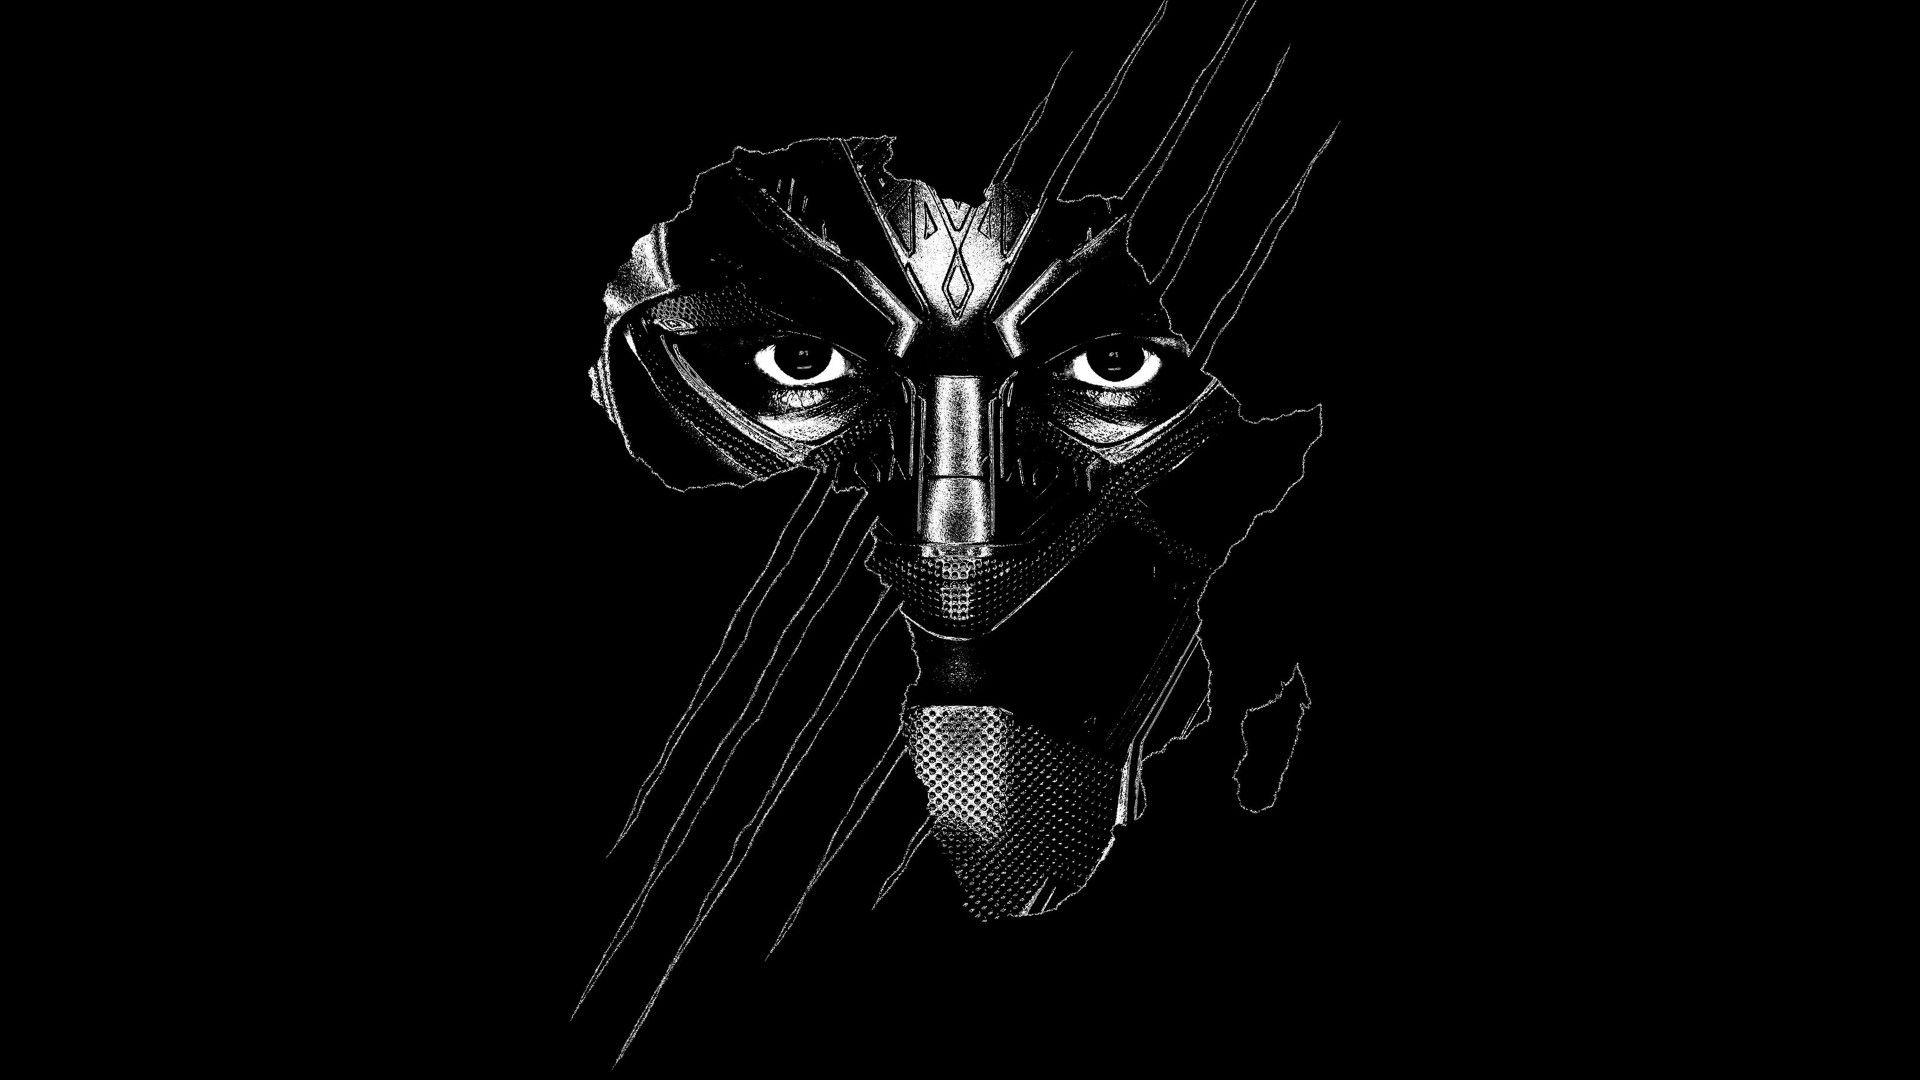 Black Panther Eyes Wallpapers - Top Free Black Panther Eyes Backgrounds - WallpaperAccess